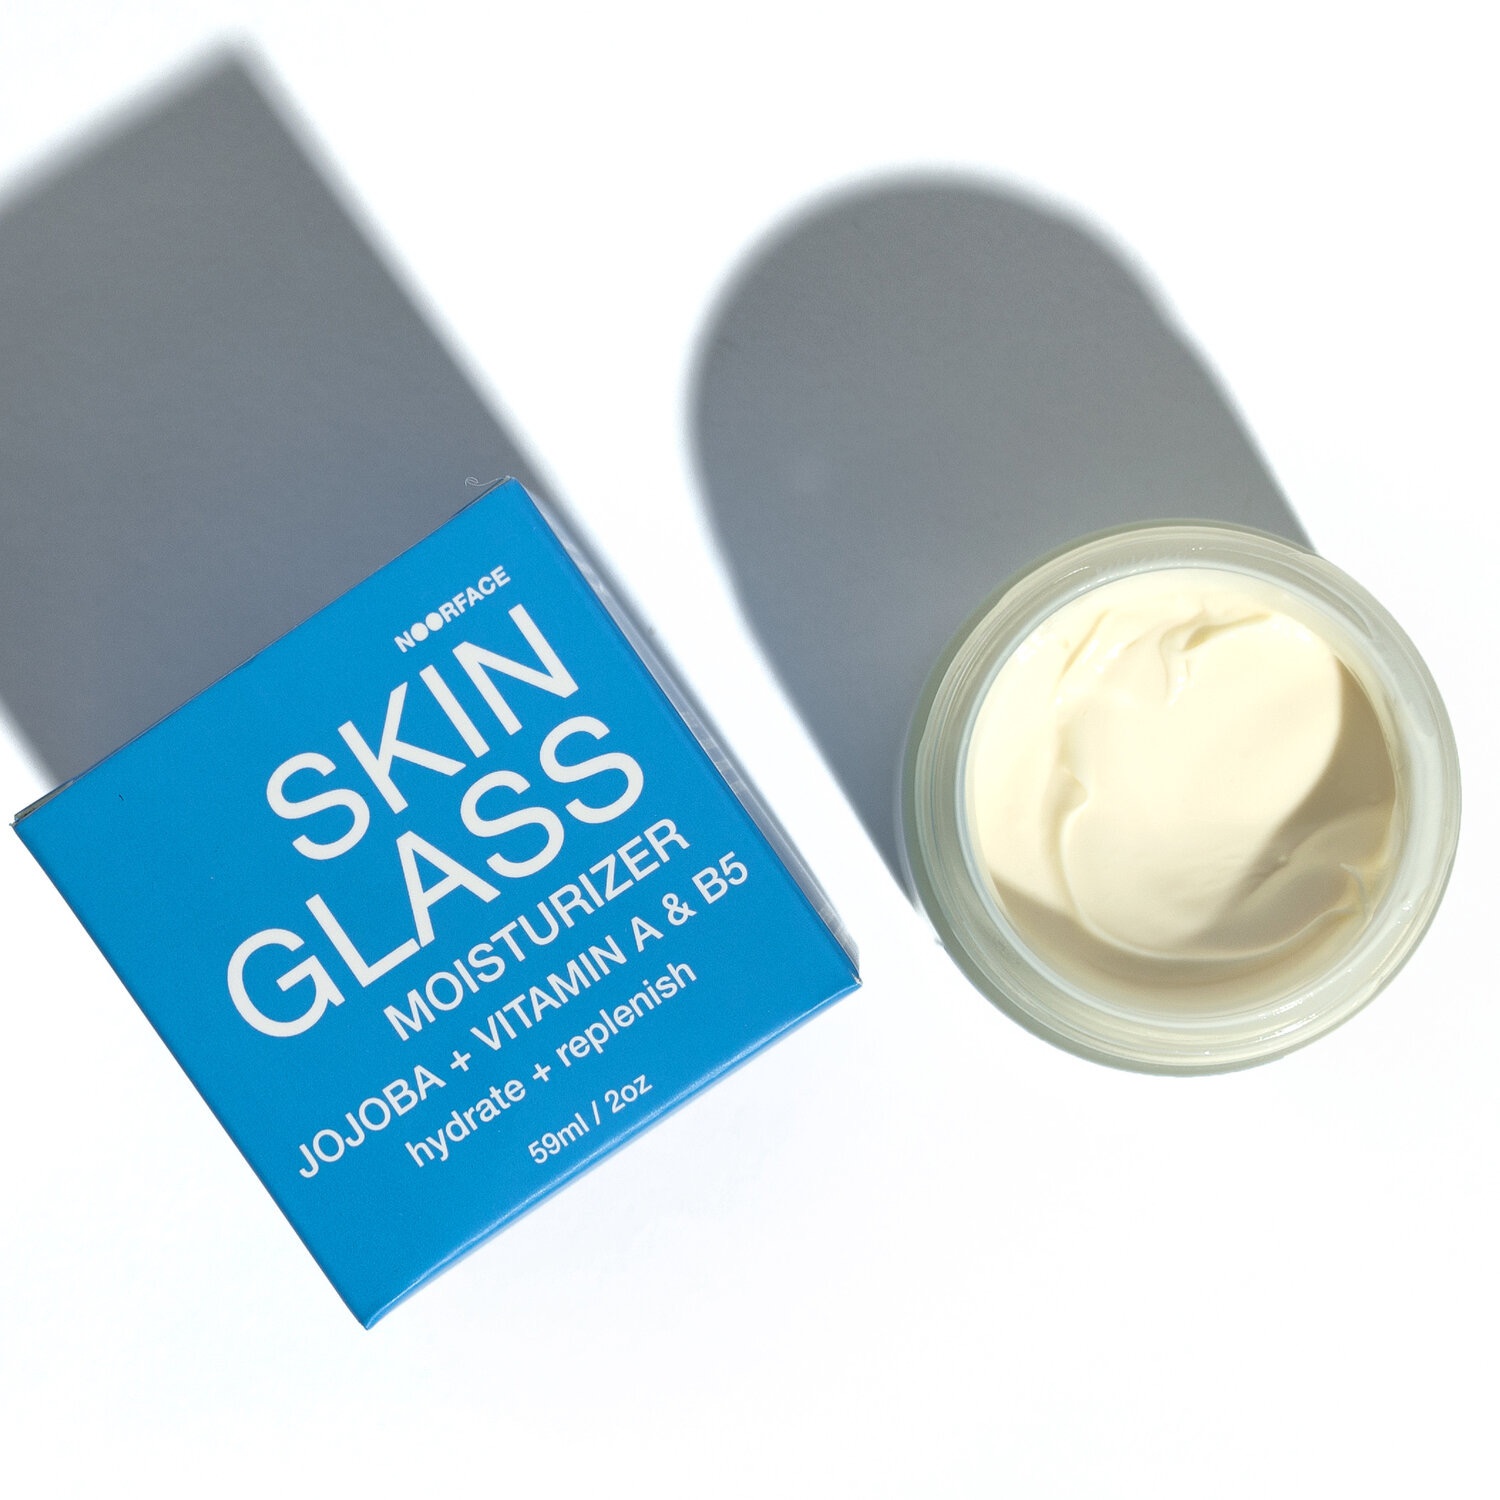 NoorFace Skin Glass Moisturizer